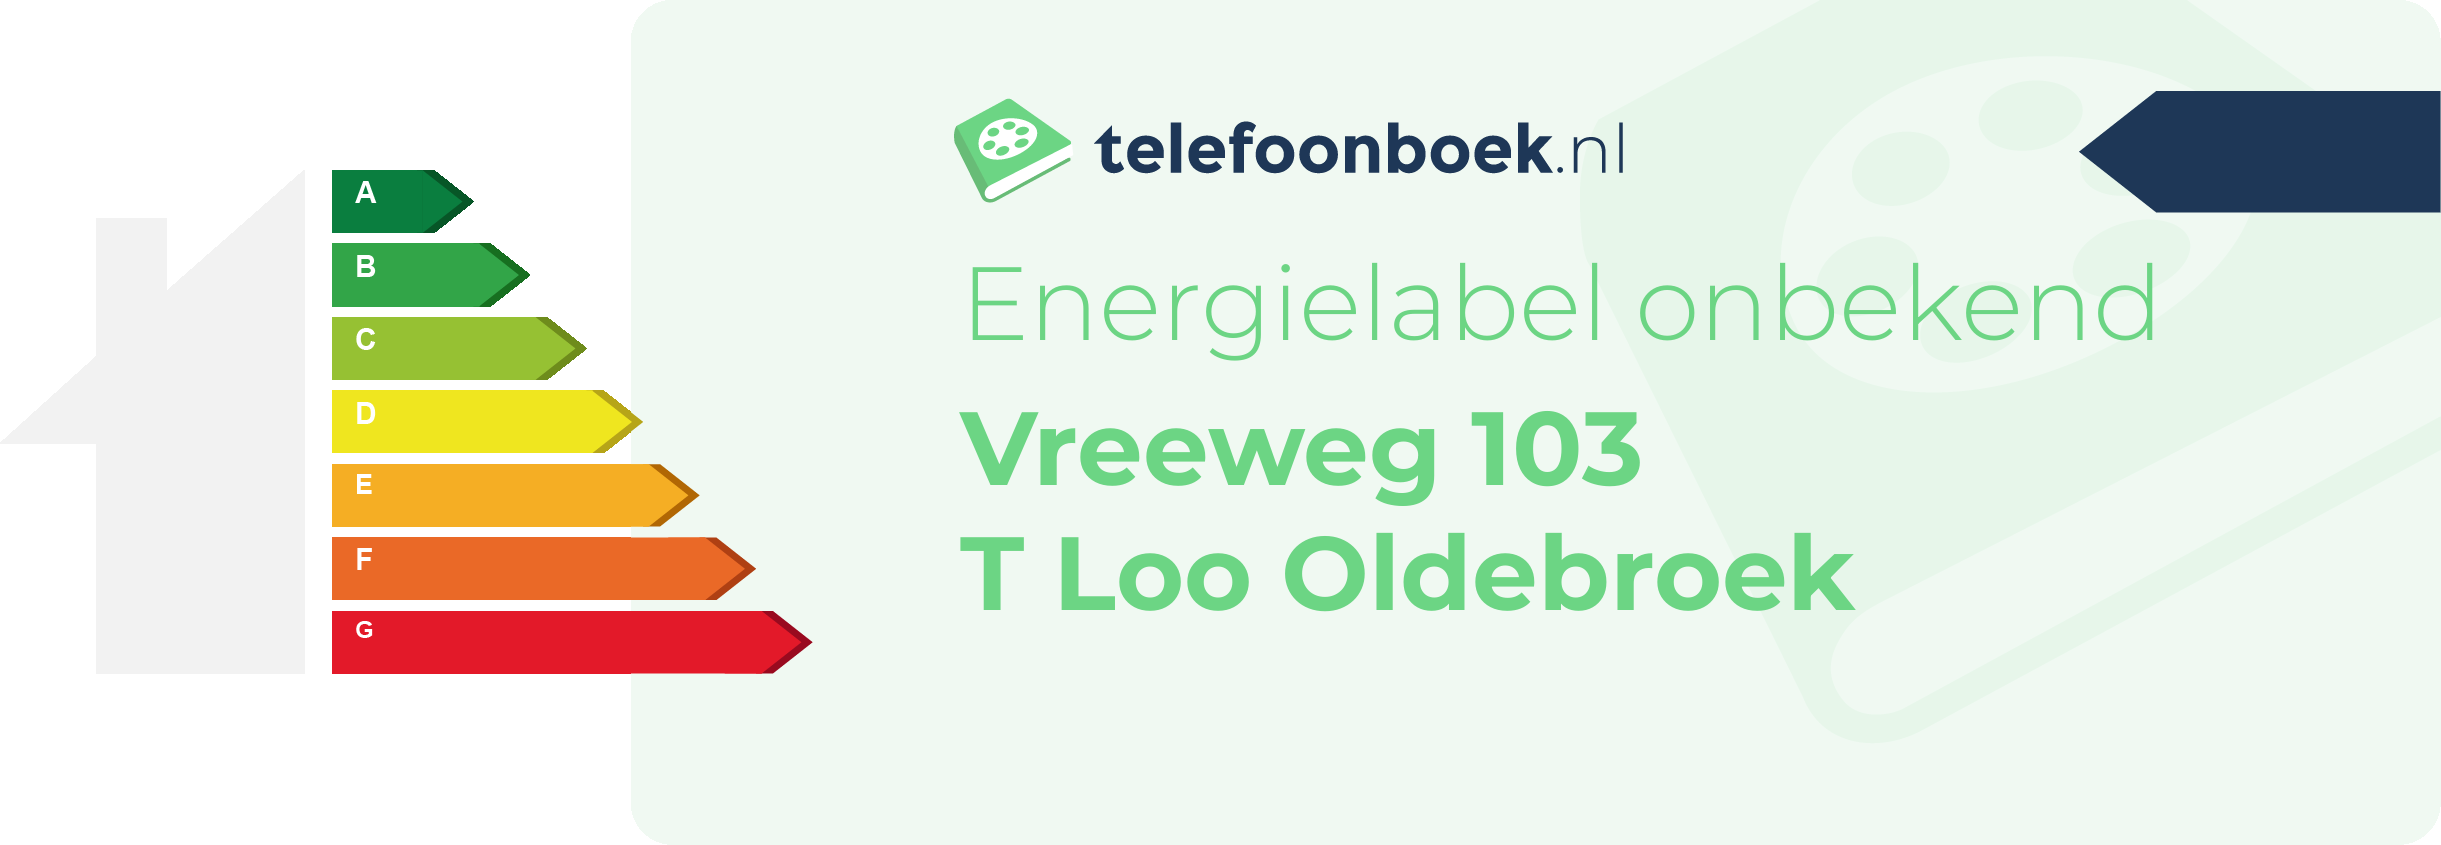 Energielabel Vreeweg 103 T Loo Oldebroek